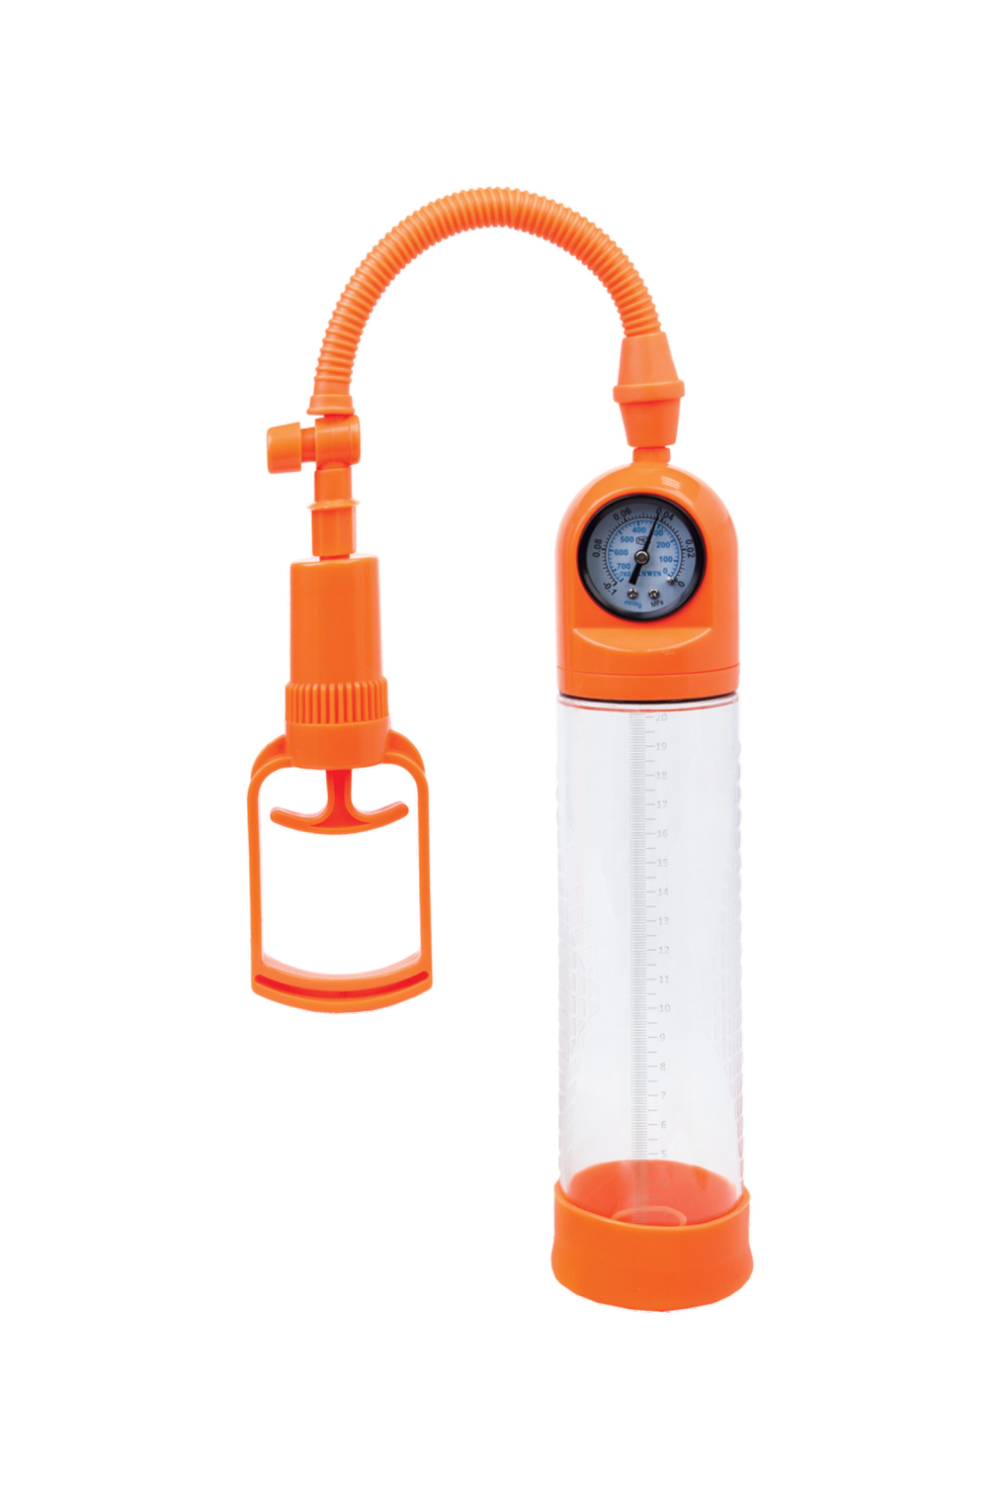 Вакуумная помпа A-toys мощная с манометром, оранжевая, 20 см